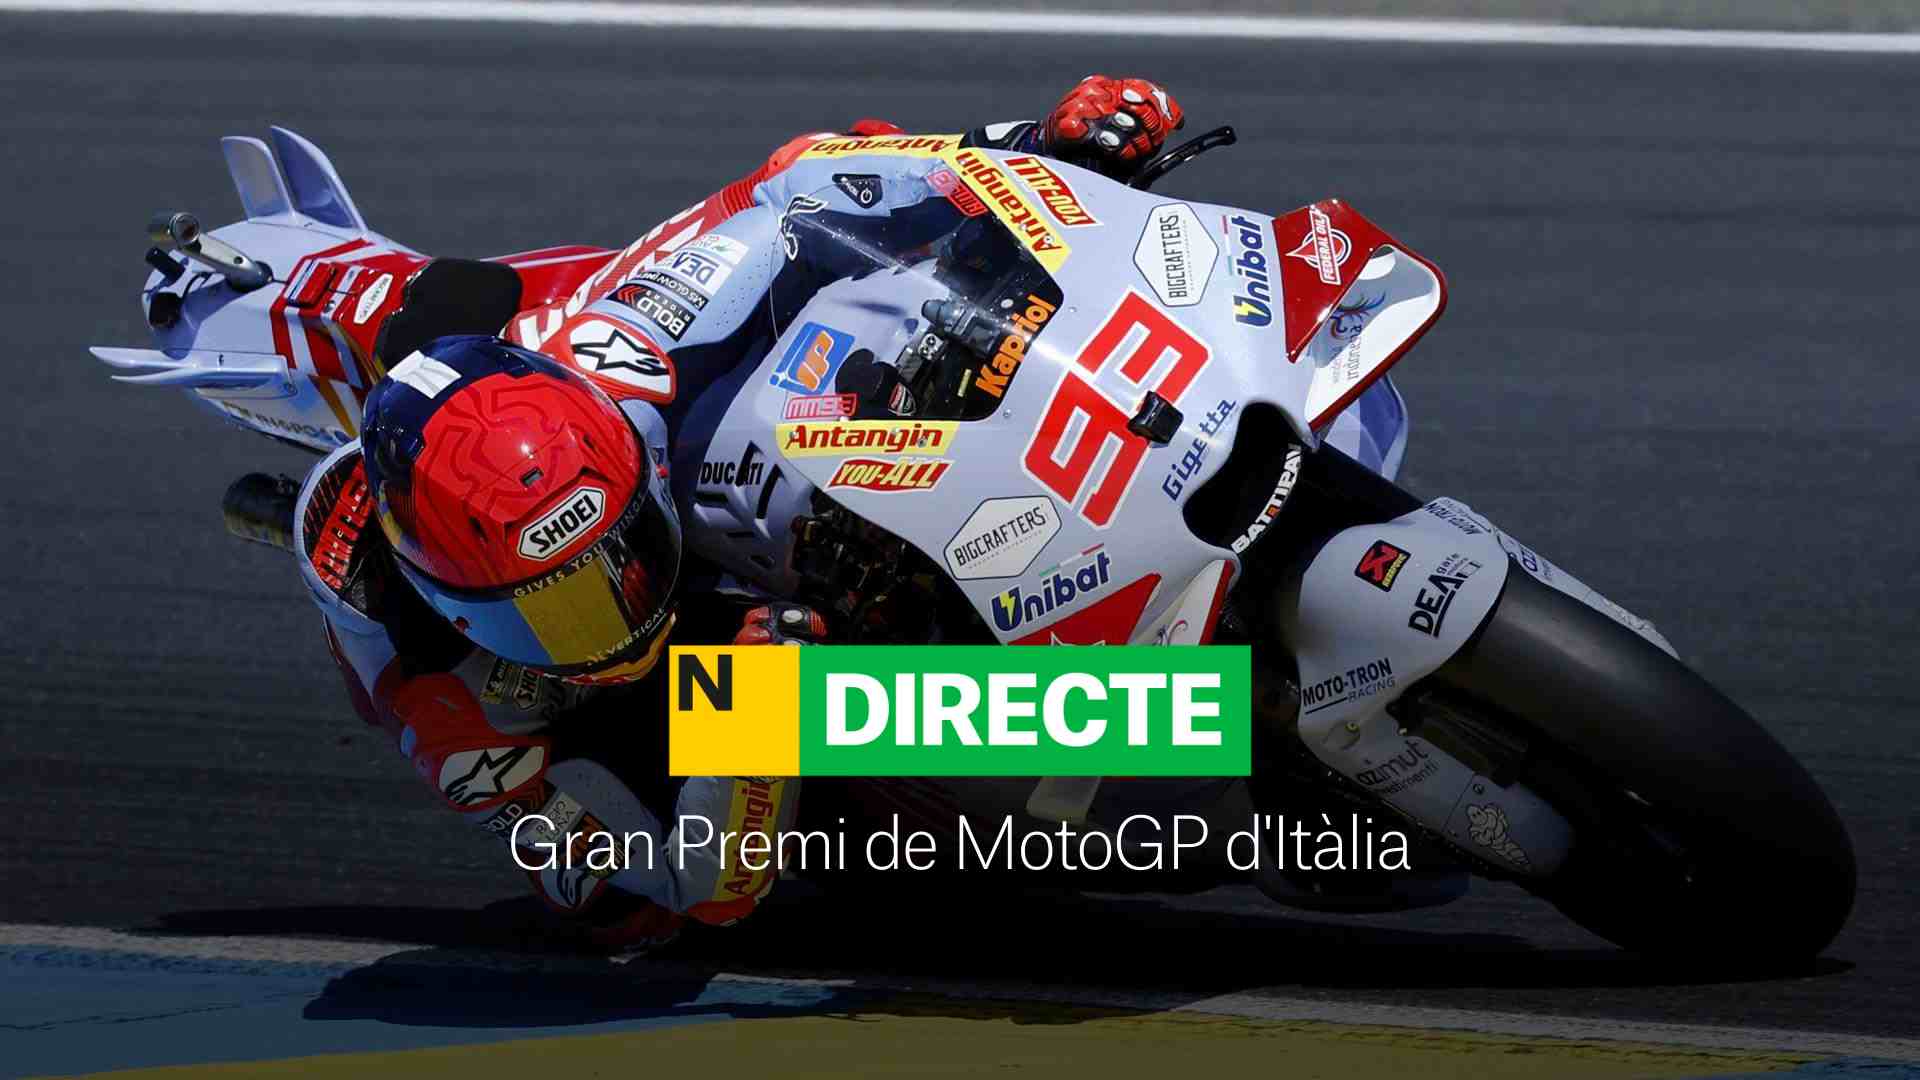 Gran Premi de MotoGP d'Itàlia, DIRECTE | Resultat i resum